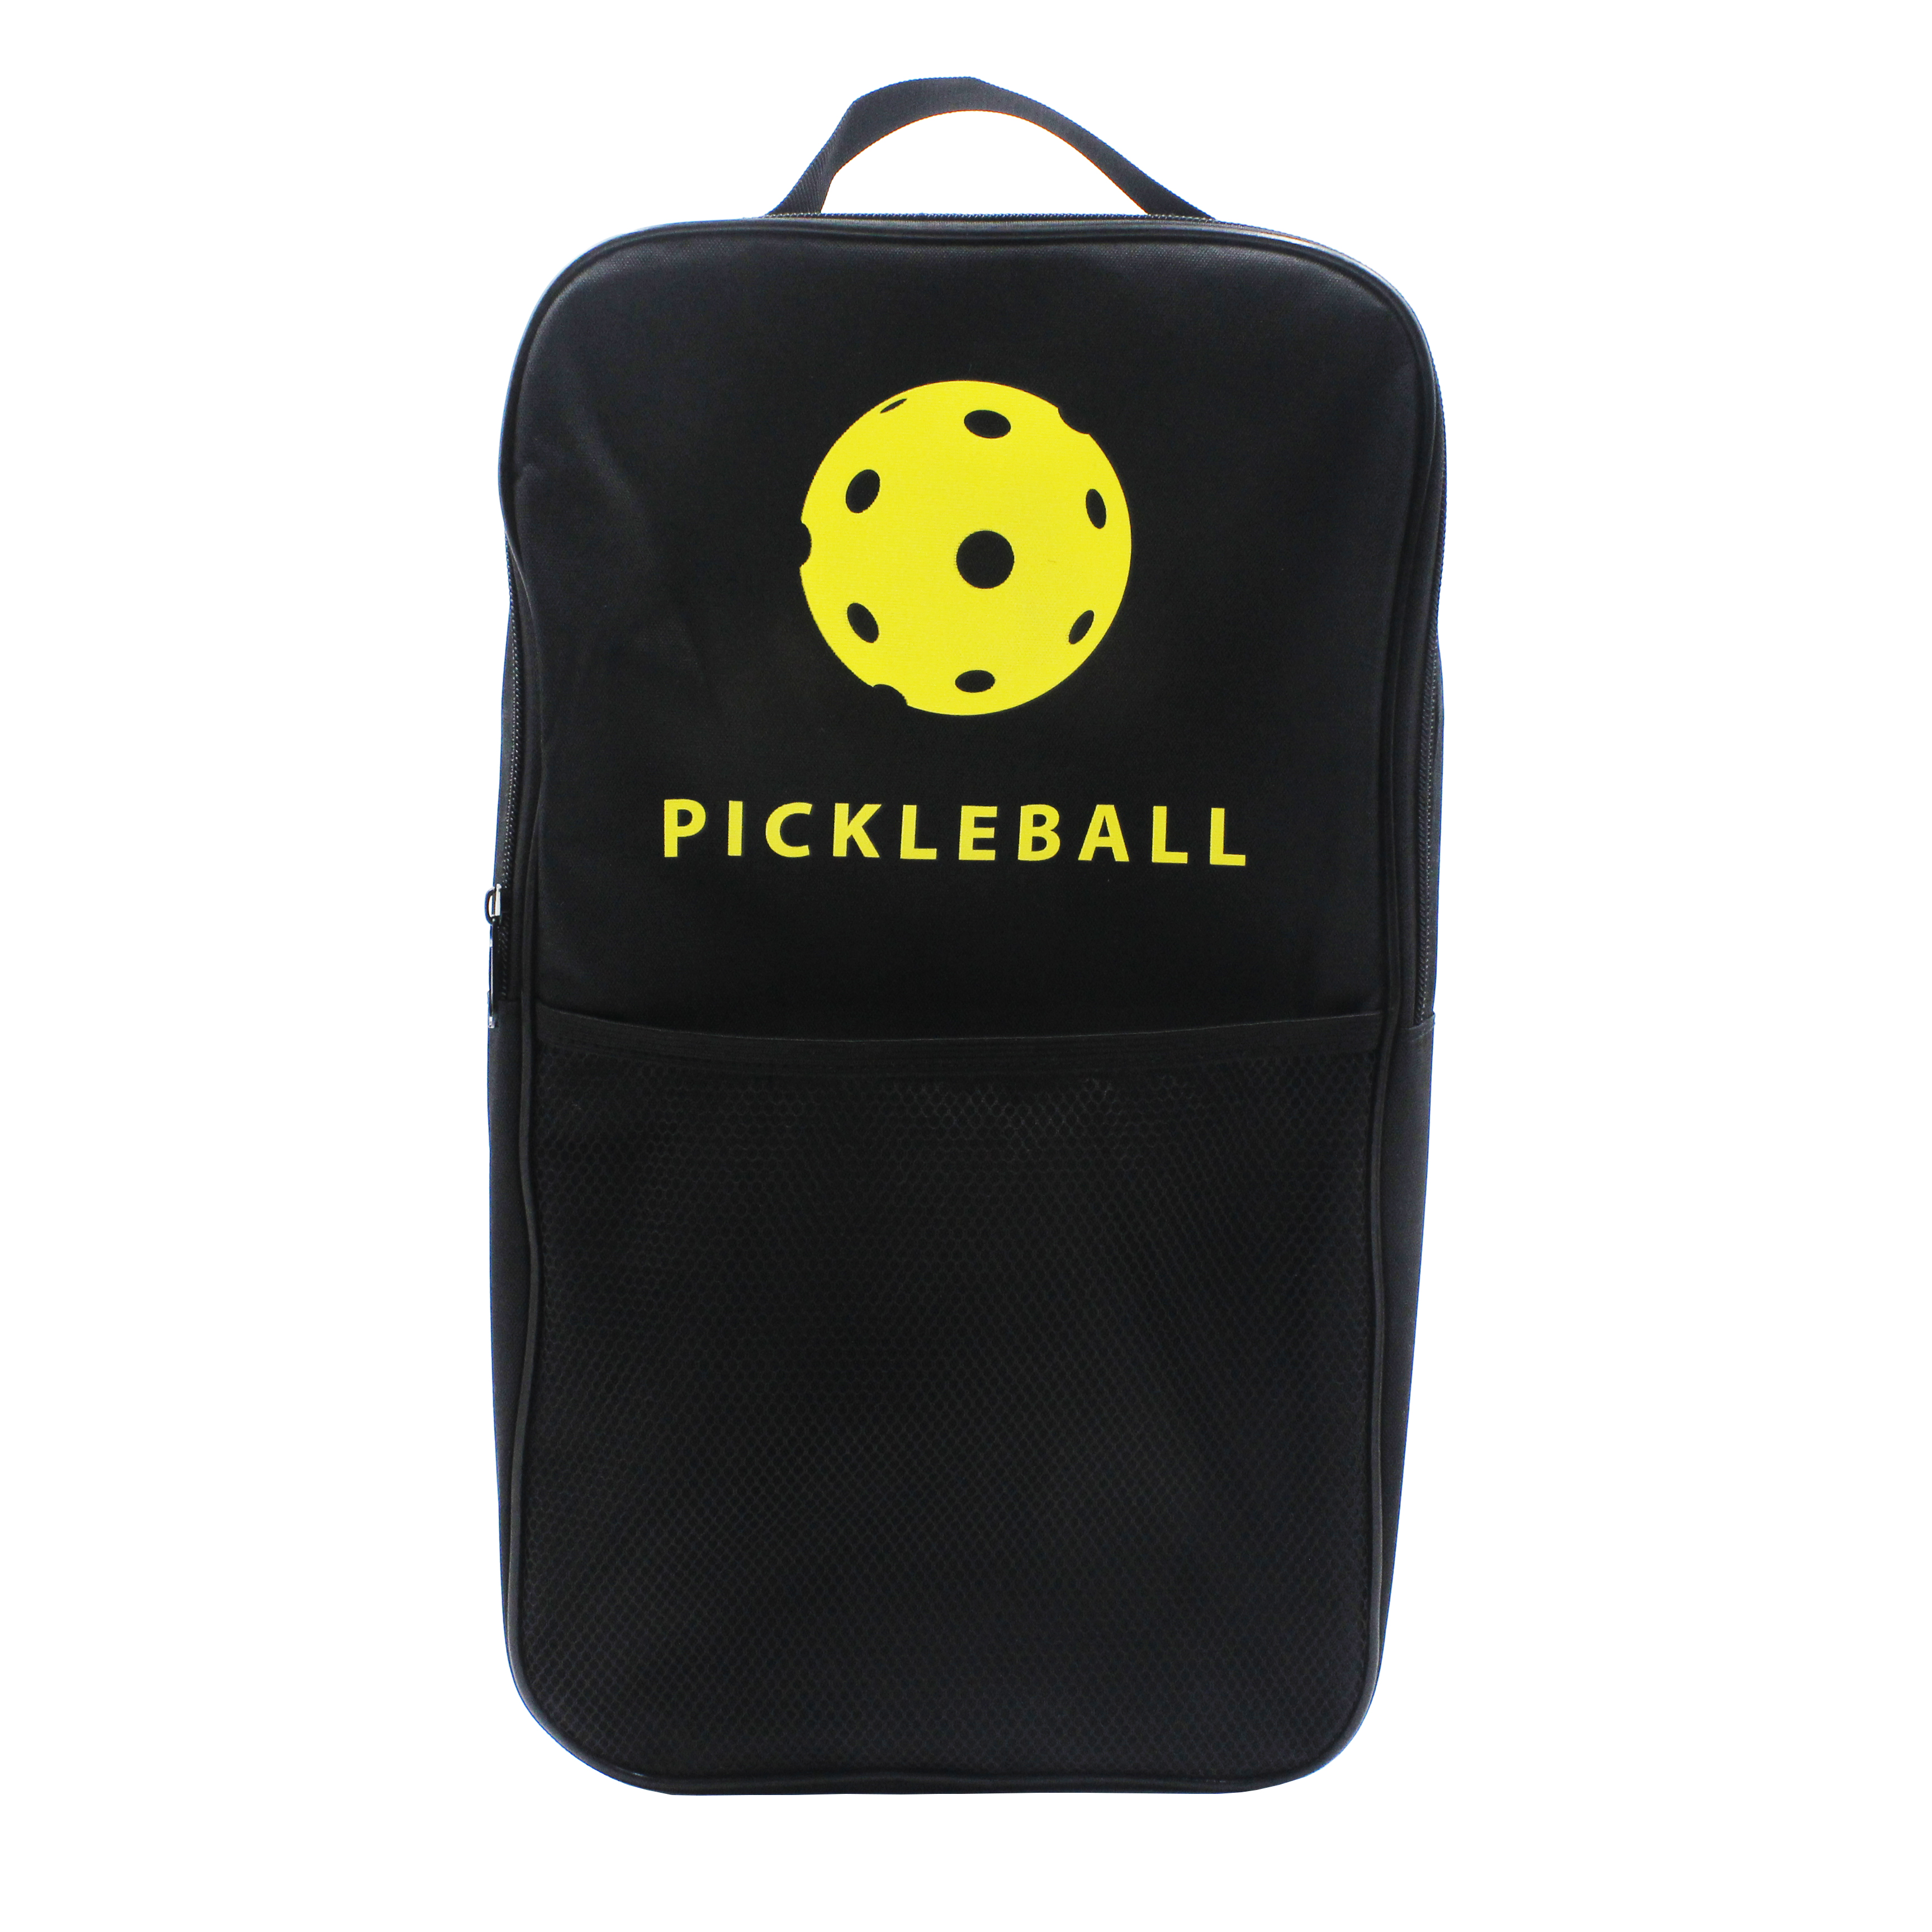 سعر المصنع مجموعة مجاذيف كرة المخلل الجرافيت 2 مجاذيف 4 كرات 1 حقيبة حمل مع مسترد الكرة